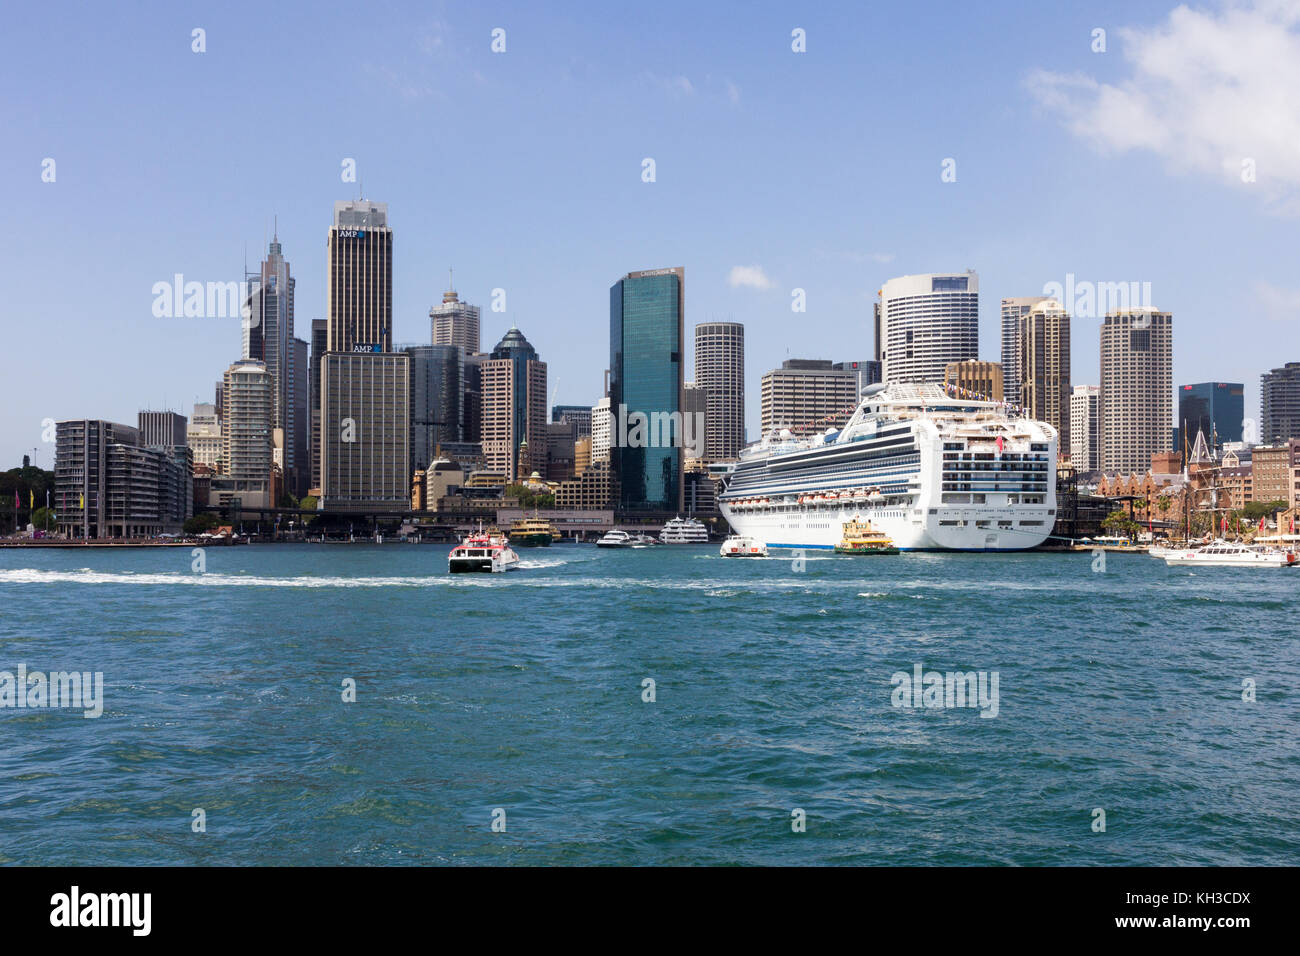 Diamond Princess bateau de croisière amarré dans le port de Sydney par le Central Business District, New South Wales, Australie Banque D'Images